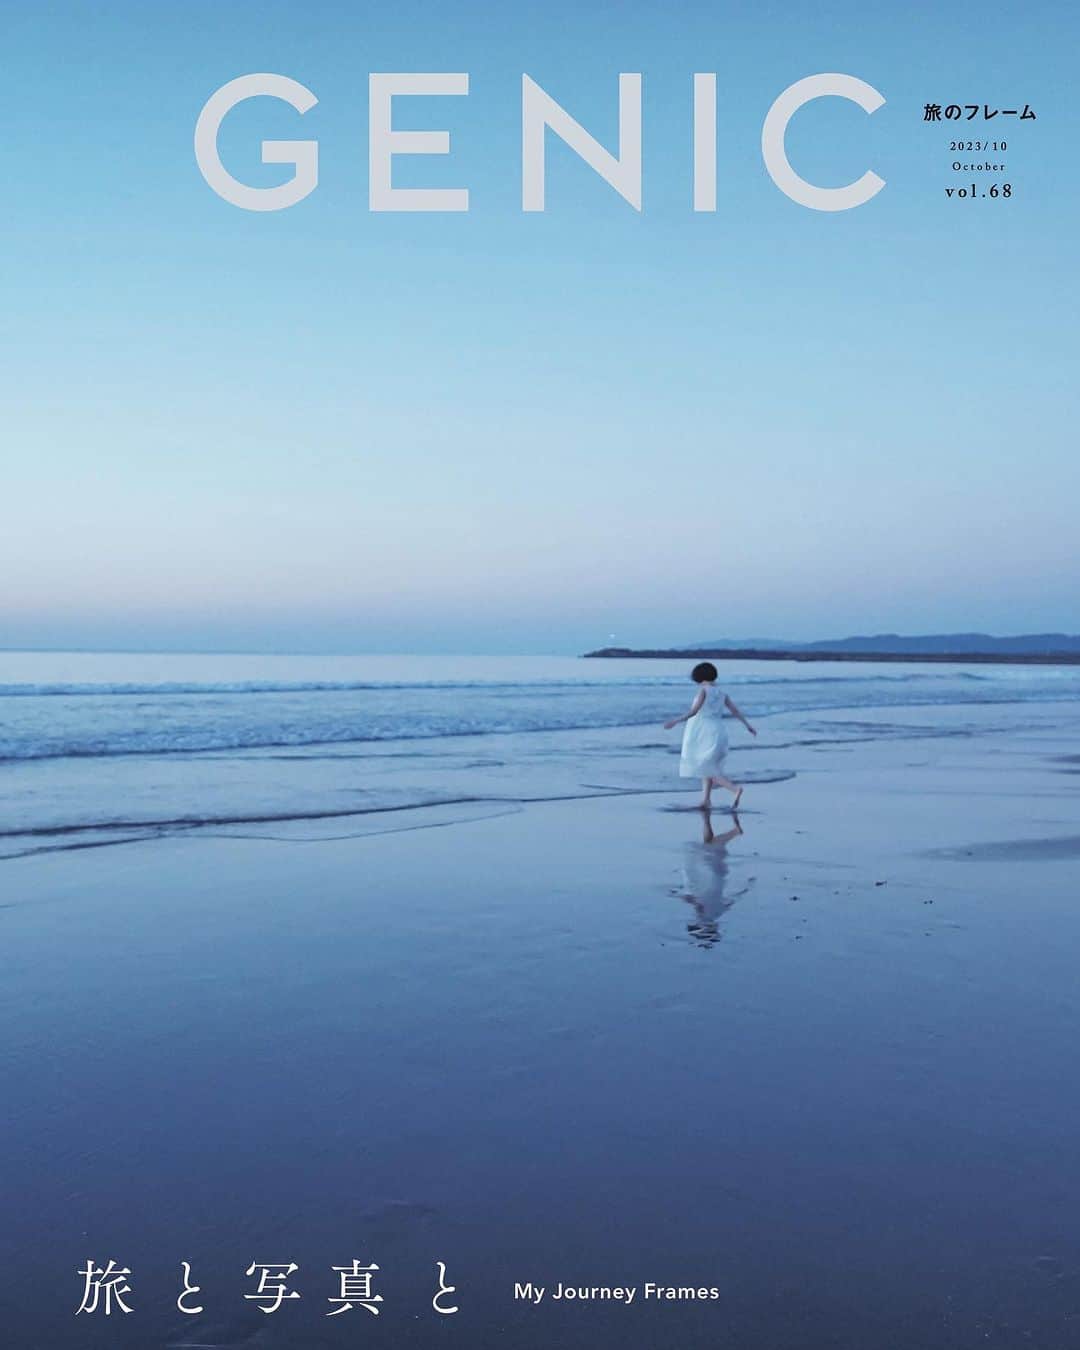 GENIC 公式インスタグラムさんのインスタグラム写真 - (GENIC 公式インスタグラムInstagram)「・ #genic_mag  9月7日発売のGENIC10月号のテーマは「旅と写真と」。  まだ見ぬ光景を求めて、新しい出逢いに期待して、私たちは旅に出ます。どんな時も旅することを諦めず、その想いを持ち続けてきました。ふたたび動き出した時計を止めずに、「いつか」という言葉を捨てて。写真は旅する原動力。今すぐカメラを持って、日本へ、世界へ。約2年ぶりの旅写真特集。写真家、表現者たちそれぞれの「旅のフレーム」をたっぷりとお届けします。  Cover Photo： 岩倉しおり @iwakurashiori  ご予約は、ショップタグ、もしくはプロフィール欄のリンクからお願いします。  【Special】 ■旅は時代を写すために。／高橋ヨーコ @yoko1970  ■Unconscious 無自覚／市橋織江  【特集】 ■写真家が旅する理由 出演（掲載順）：在本彌生、七咲友梨、かくたみほ、上田優紀 @yoyomarch @nanasaki_yuri @mihokakuta @photographer_yukiueda  ■フォトグラファー流「旅のMyルール」 出演（掲載順）：岩倉しおり、tsukao、竹沢うるま、西山勲 @iwakurashiori @tsukao @uruma_takezawa @isao_nishiyama  ■This is my Journey 我が旅をゆく。 出演（掲載順）：安彦幸枝、根本絵梨子、ミズカイケイコ、ジンケ・ブレッソン @abikosachie @neeemooo @mizukaikeiko @airspice_official  ■俳優、アスリートたちが撮る「旅のフレーム」 出演（掲載順）：坂東龍汰、髙梨沙羅、南 沙良 @ryota_bando @sara.takanashi @lespros_sara00  ■週末“撮影旅” プレゼン 出演（掲載順）：澤村洋兵、櫻子、土屋昌徳、Seto @yohei_sawamura @sako_photo @masanoritsuchiya @seto_shima  ■世界遺産に推薦したい！日本の新百景 出演（掲載順）：まちゅばら／ Hiroki Matsubara、森谷 健、LuLu、Shota、Riki Shinagawa、tsumizo、Ryogo Urata、長谷川美和、こうよう、藤浪秀明 @mpmb77 @ken.f430 @lulu_camera @umestagram @riki_s7_ @tsumizo @ryogo_urata @odekakephoto7 @kouyou_jp @wasabitool  ■トラベルシューティングの必需品 出演（掲載順）：Halno、6151、澤村洋兵、AYANCE、杉本優也、jyota tomonori、櫻井千尋、konny @halno @6151 @yohei_sawamura @ayance__ @u_ya021 @jt.333 @chihirosakurai @konny0_0  ■写真募集企画「私のベスト旅写真」  【連載】 ■女優・橋本愛「日日是好日」第15回 @ai__hashimoto  ■小関裕太 ／自分探しの旅「スキ」第14回 @kotobanoamarinaitokoro　@yuta_koseki_68  ■武井宏員＆酒井貴弘「emergence」第5回：マルシィ @take1official @sakaitakahiro_ @marcy_info  ■KYON.Jが出会った“奇跡の一瞬”「Exploring the World」第17回 @kyon.j  【and more】 ■旅の相棒にぴったりの、おすすめカメラカタログ  ■次の休みに訪れたい「深呼吸したくなる旅先」  ■Canon EOS R8「嵐田大志の1DAY TRIP」 出演：嵐田大志 @taishi_arashida  ■『写ルンです』で紡ぐノスタルジックな旅写真 出演：岩倉しおり  @iwakurashiori」8月28日 20時01分 - genic_mag